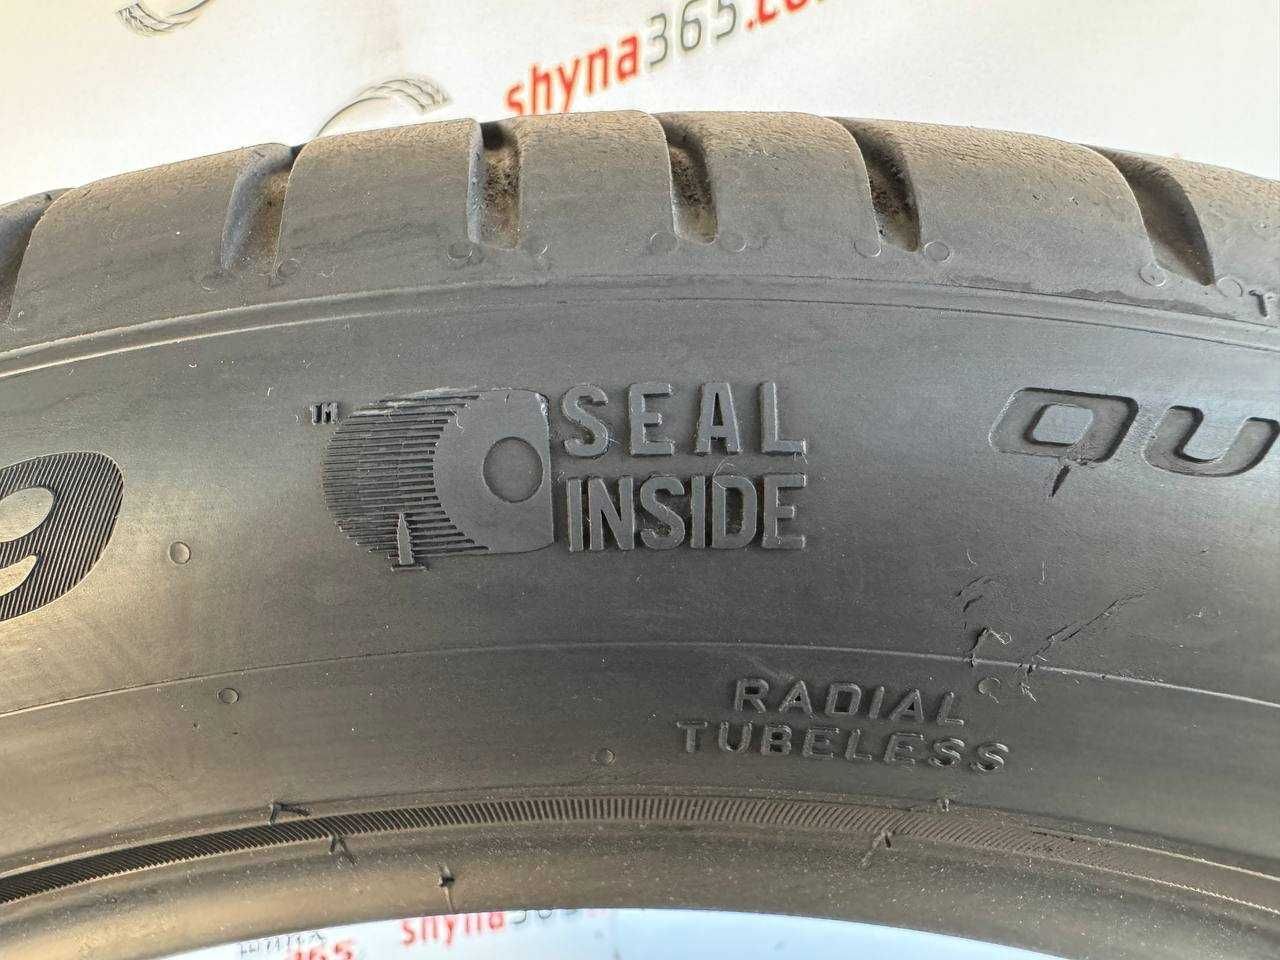 шини бу літо 255/45 r19 pirelli scorpion seal inside 4mm